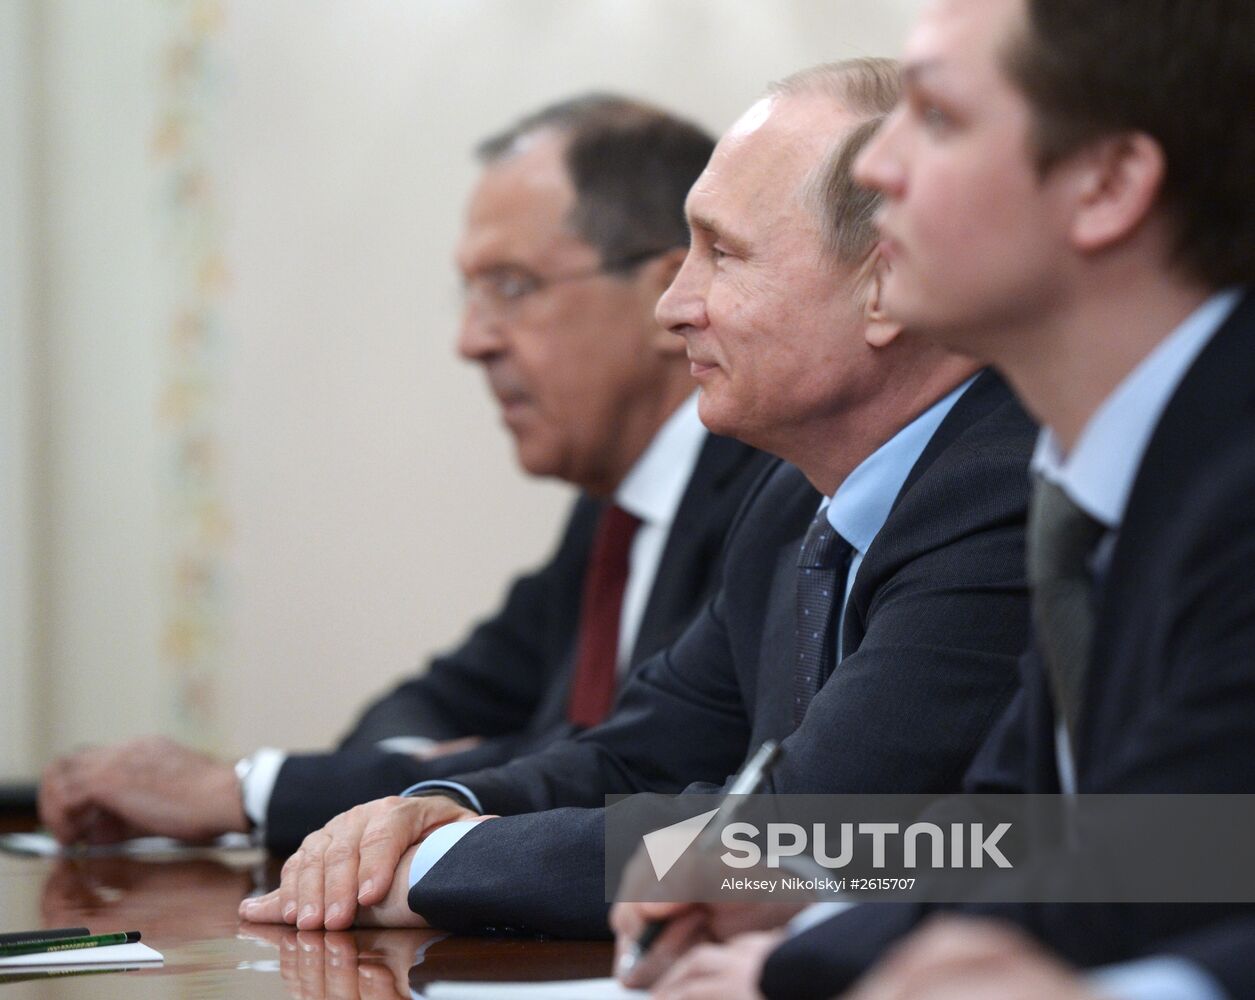 Vladimir Putin meets with members of The Elders